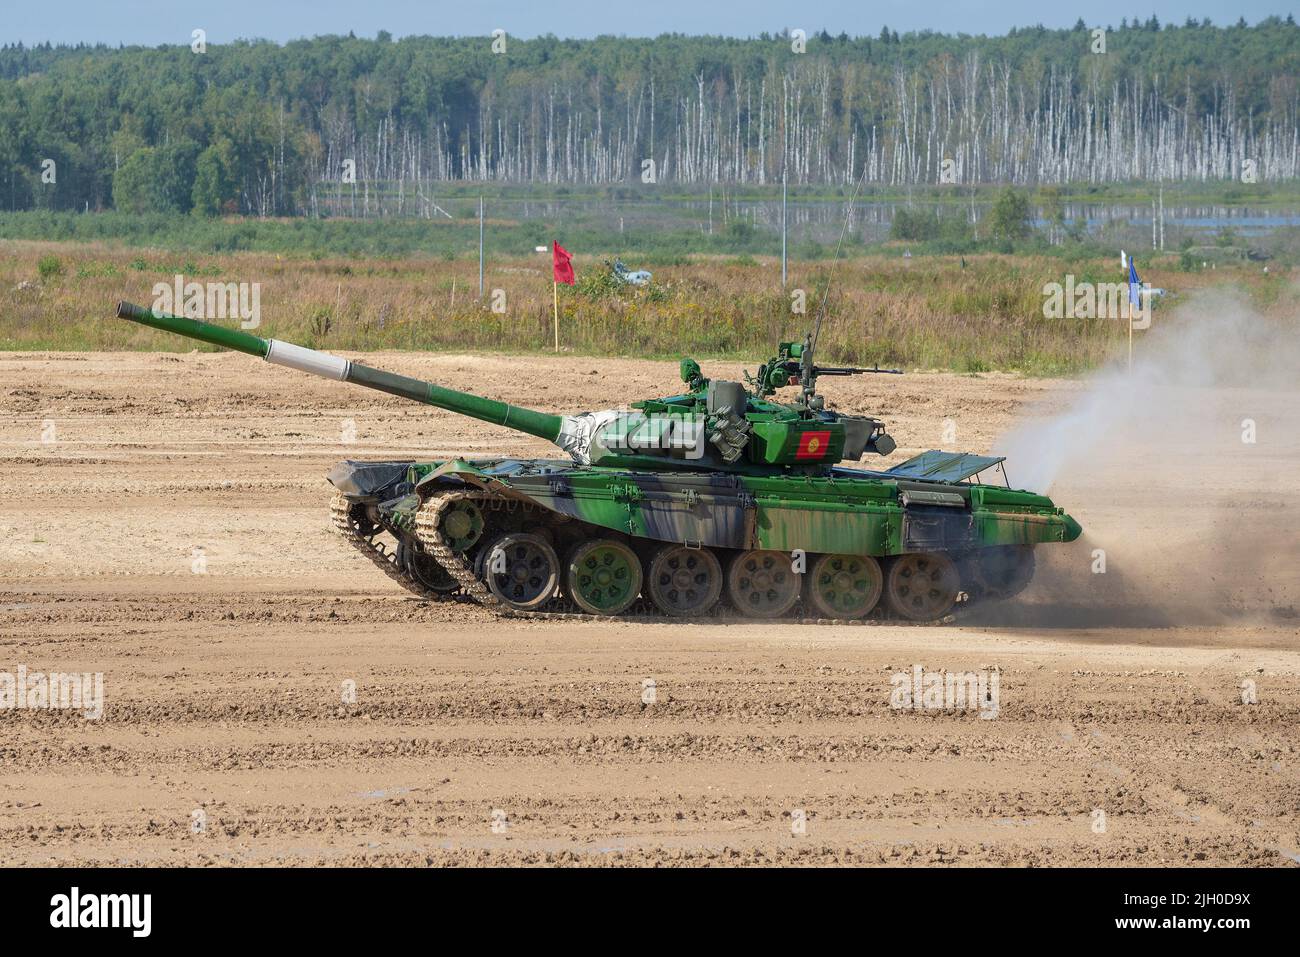 RÉGION DE MOSCOU, RUSSIE - 25 AOÛT 2020 : char T-72B3 de l'équipe kirghize sur la piste de biathlon. Jeux de l'armée internationale. Armée internationale-t Banque D'Images